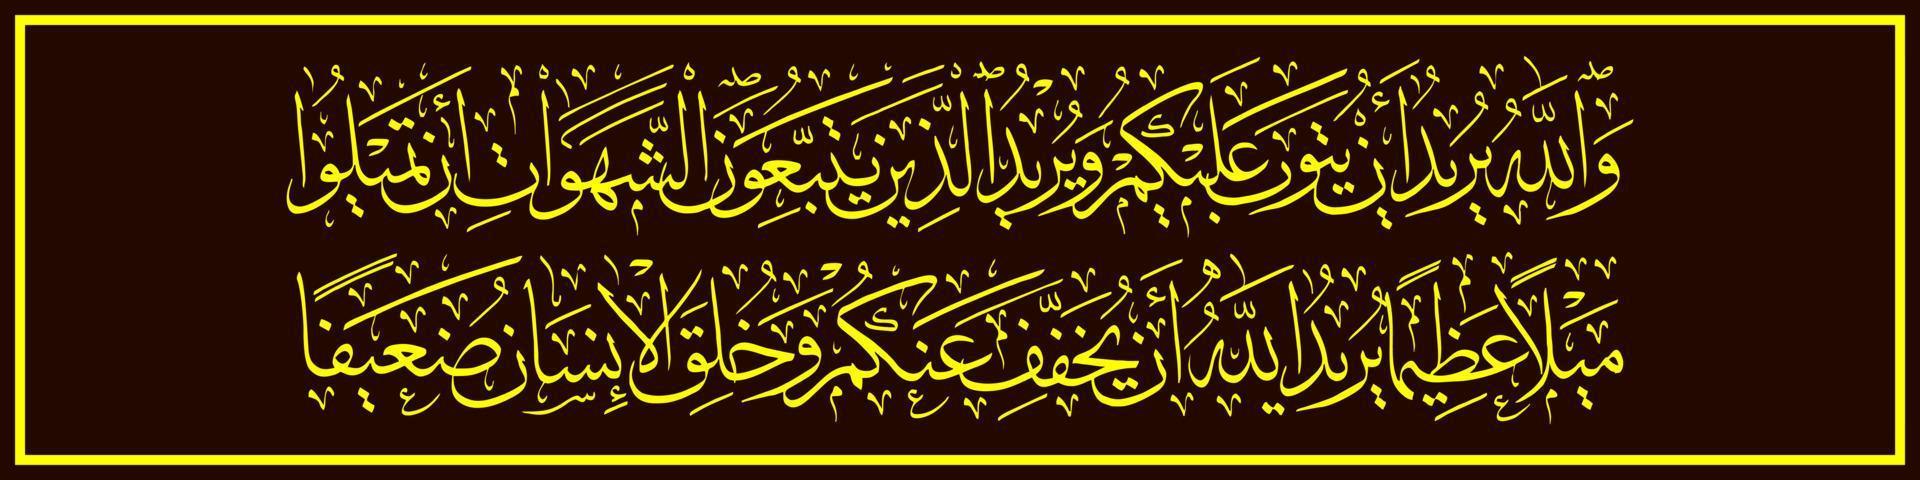 Arabisch kalligrafie, al koran soera een nisa' 2, vertaling en Allah wil naar aanvaarden uw berouw, terwijl die wie volgen zijn wensen willen u naar beurt net zo ver weg van de waarheid. vector